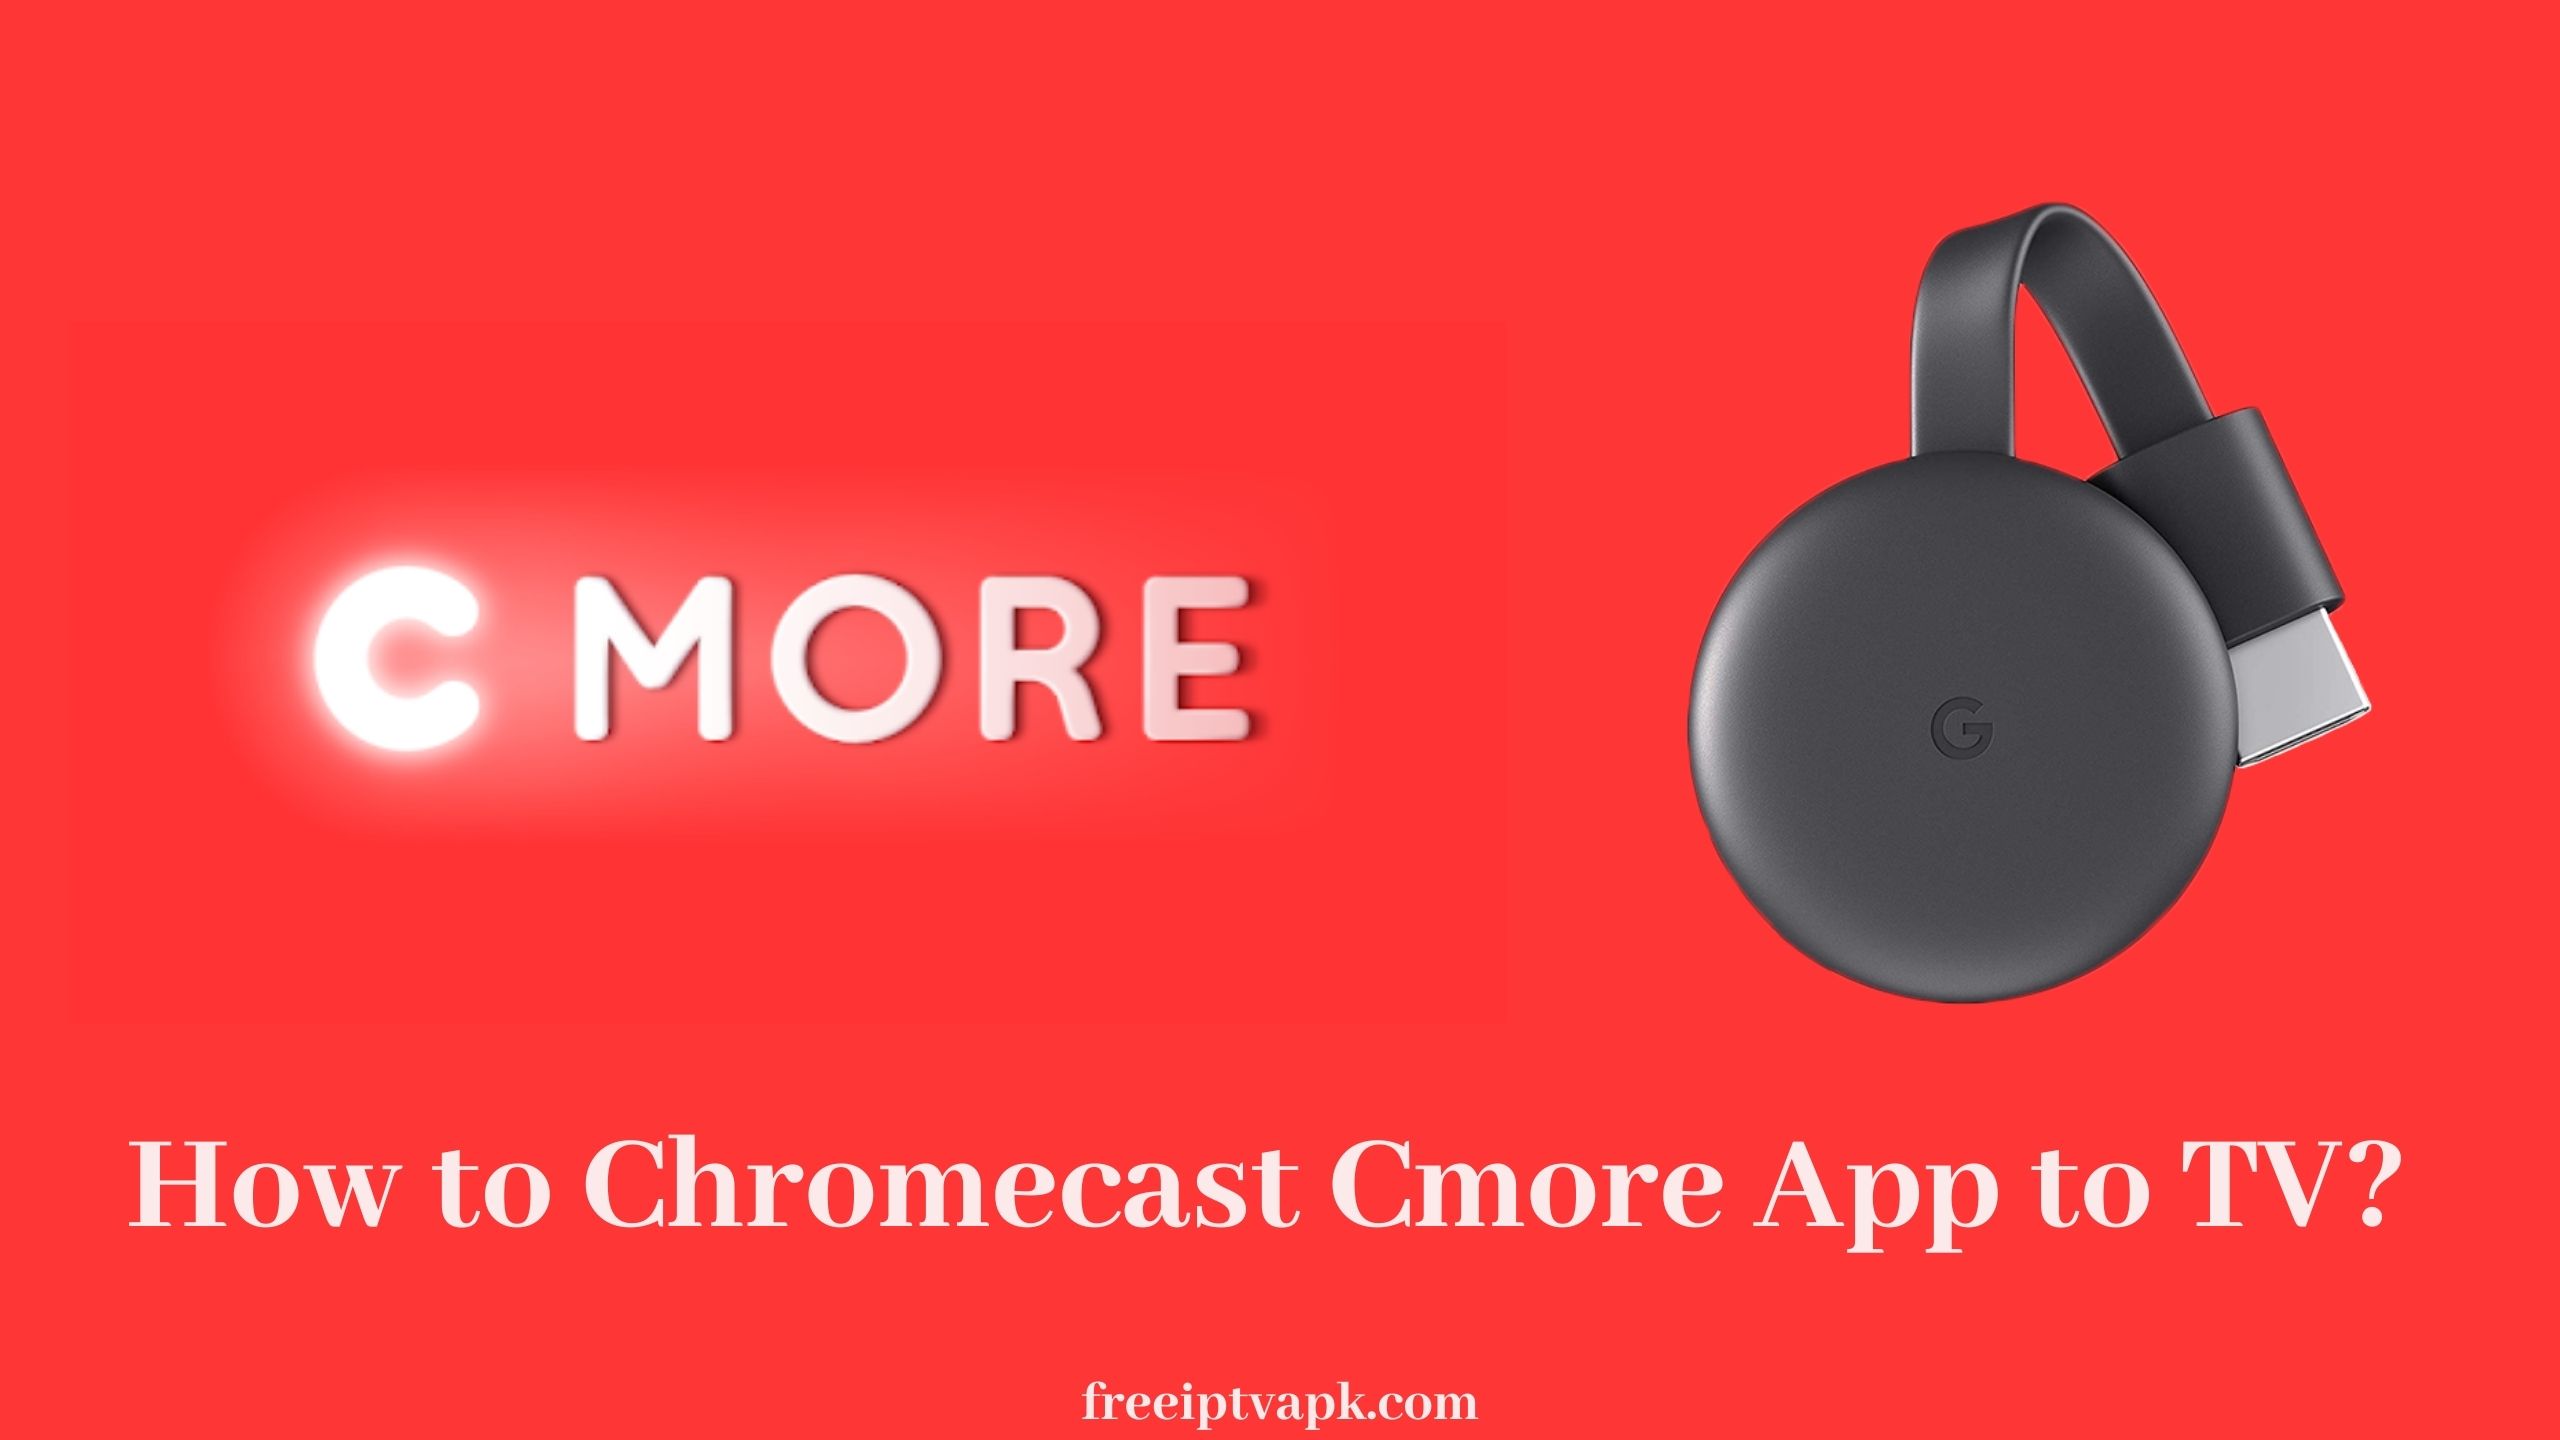 Chromecast Cmore App